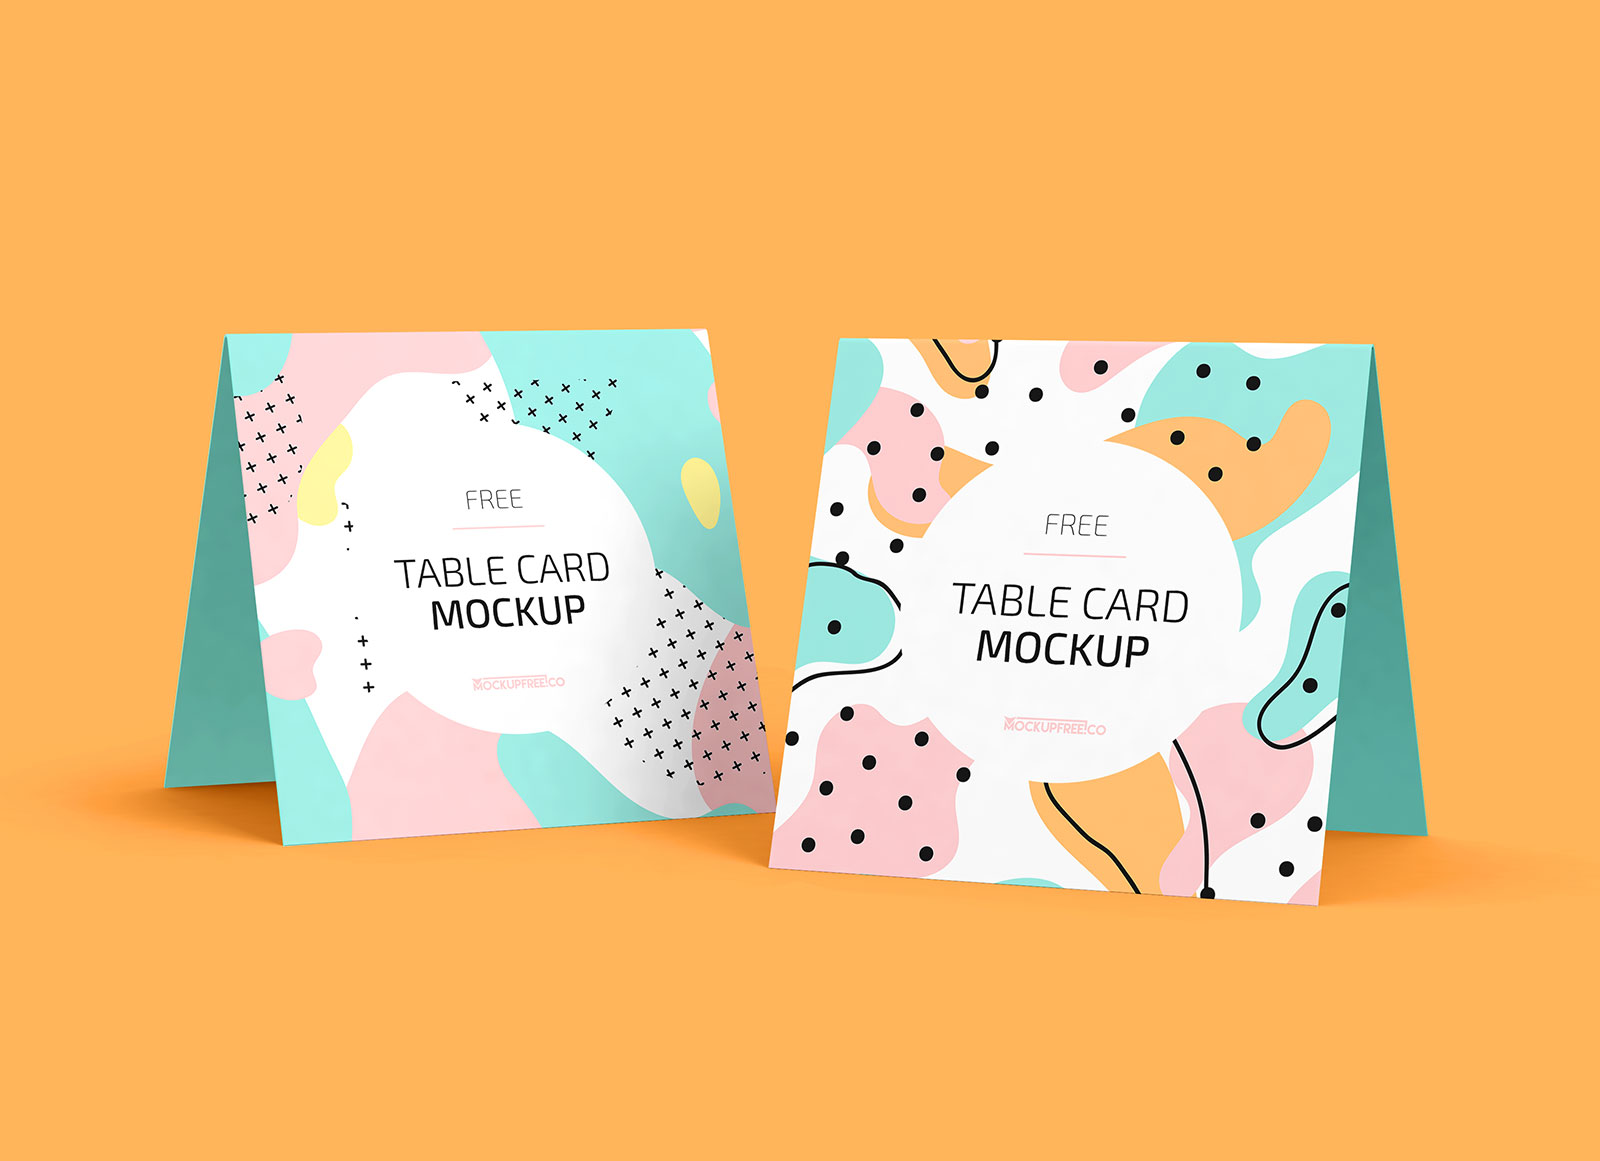 Saludo cuadrado / maqueta de tarjetas de mesa